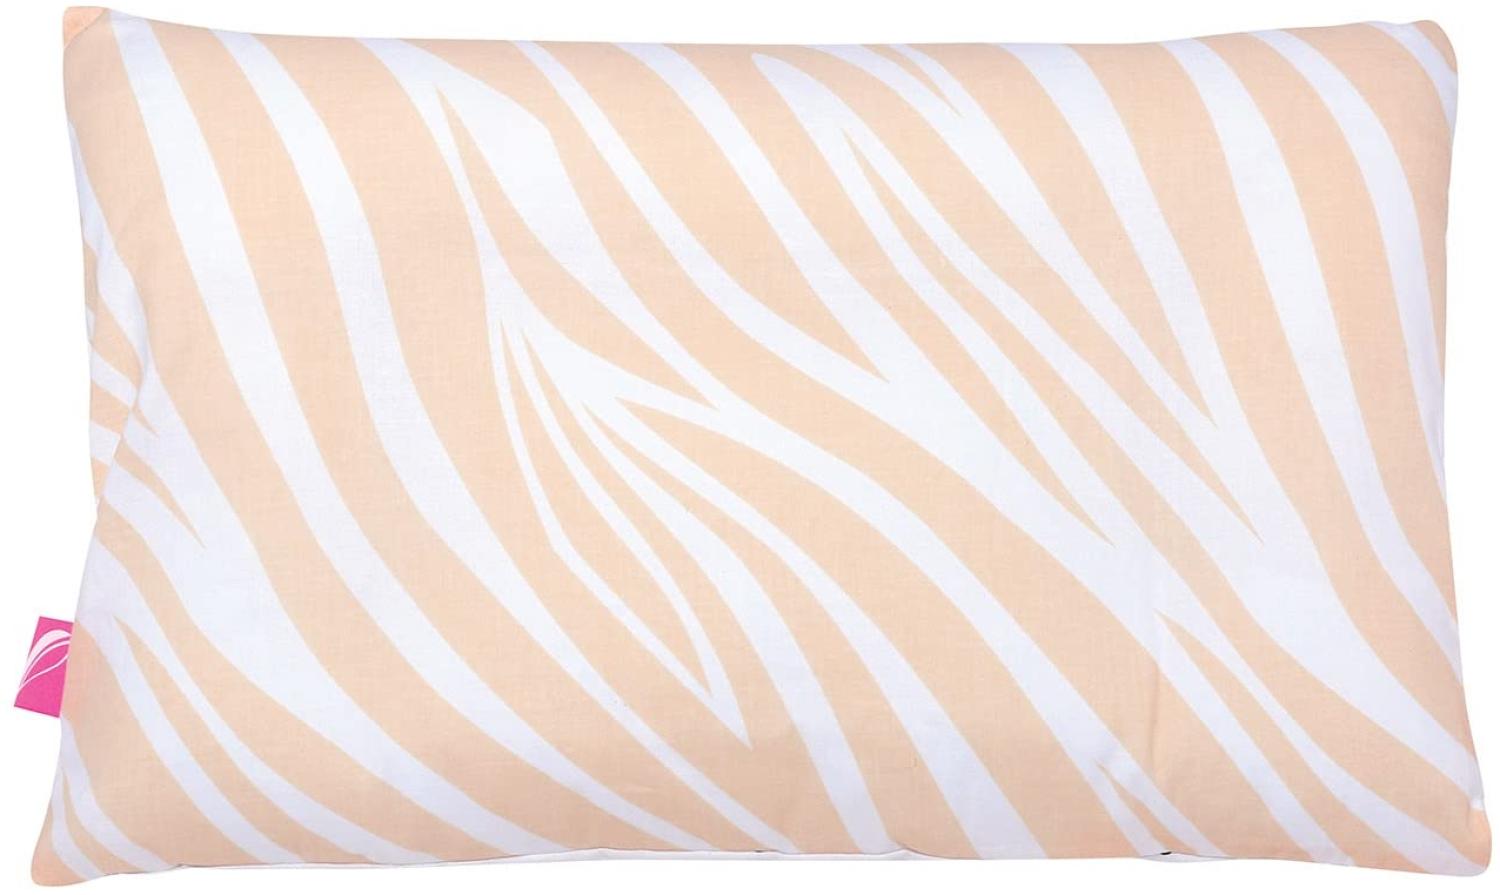 Babykopfkissen Kinderkopfkissen 35x40cm -Öko Tex Standard 100 - inkl. abnehmbarem Bezug aus 100% Baumwolle von Motherhood (Zebra apricot) Bild 1